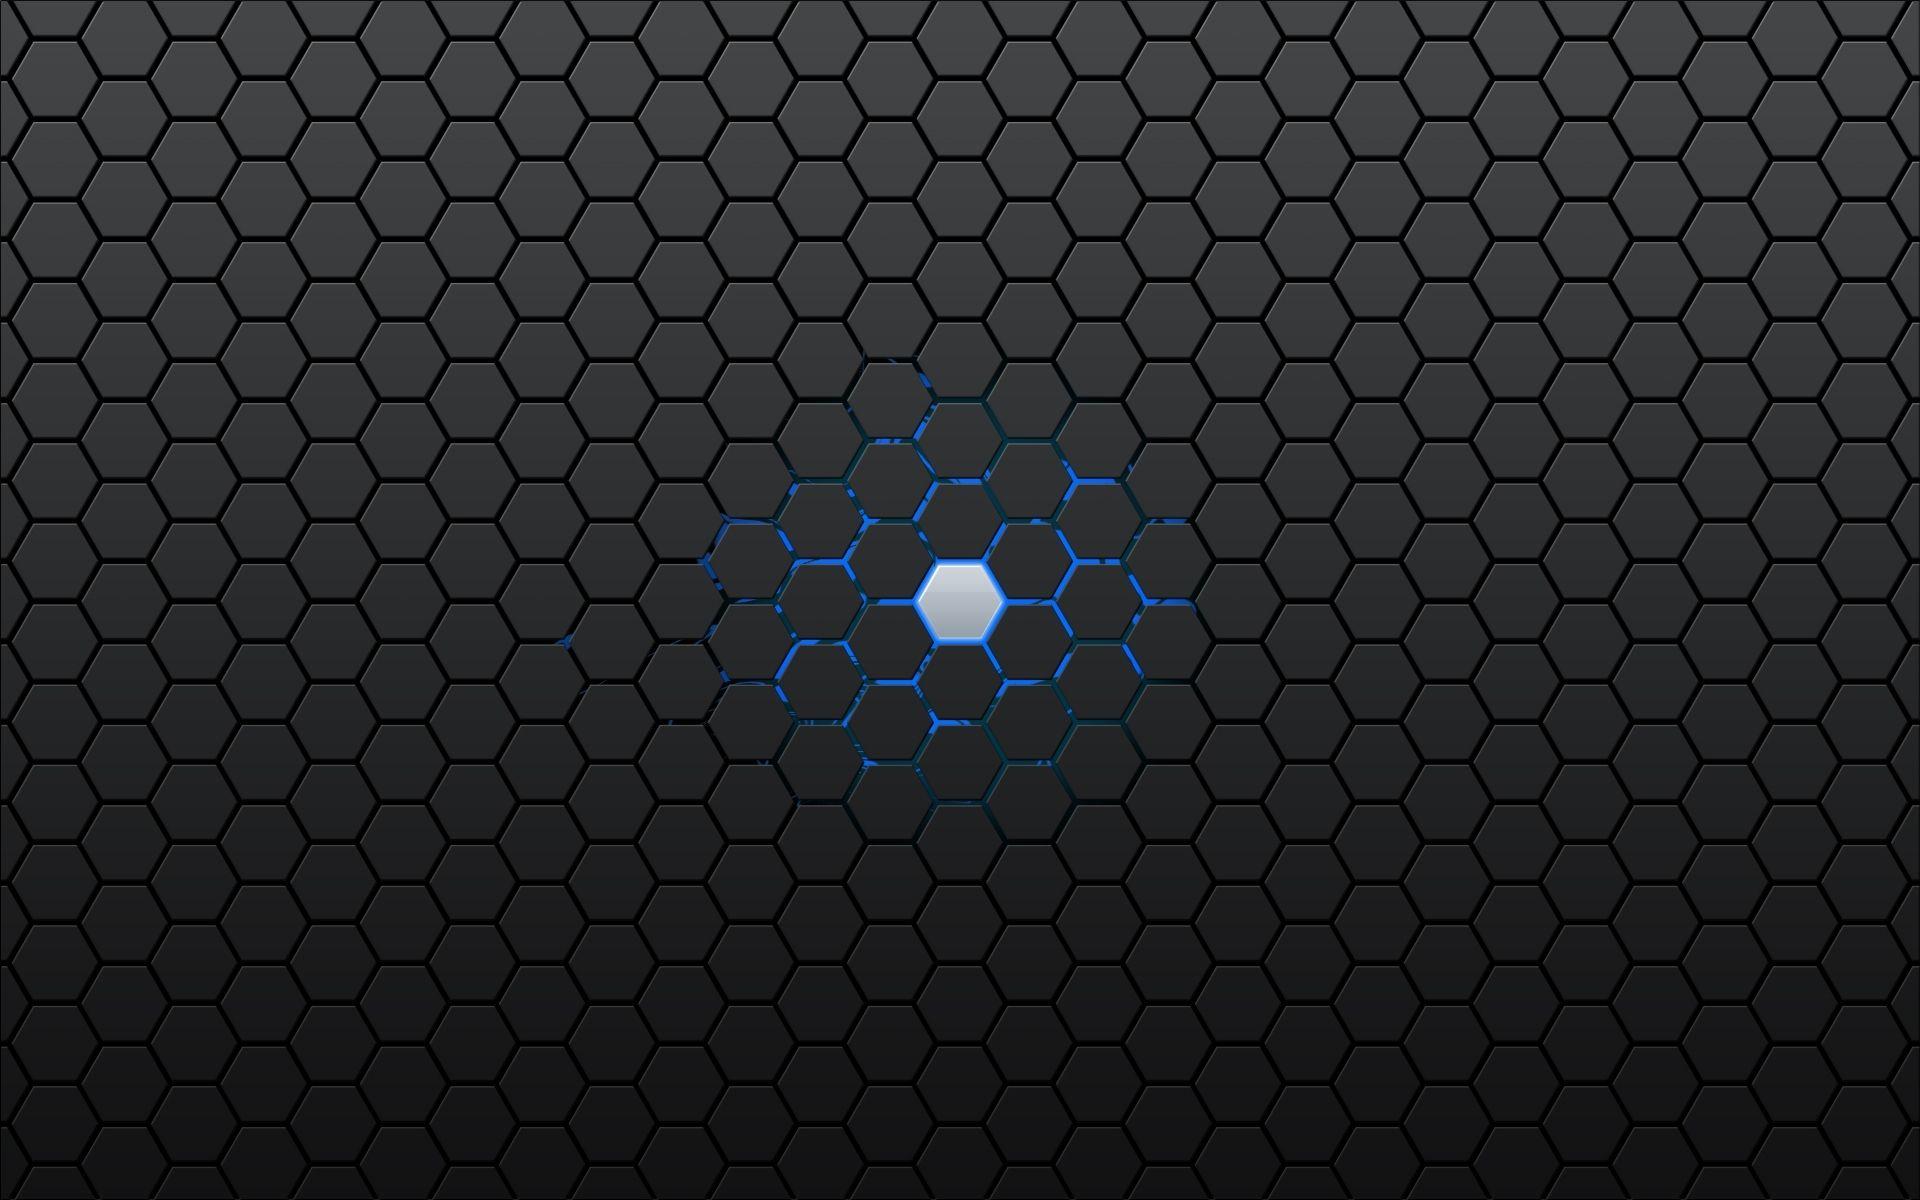 Pattern Hexagon Wallpaper. Abstract wallpaper